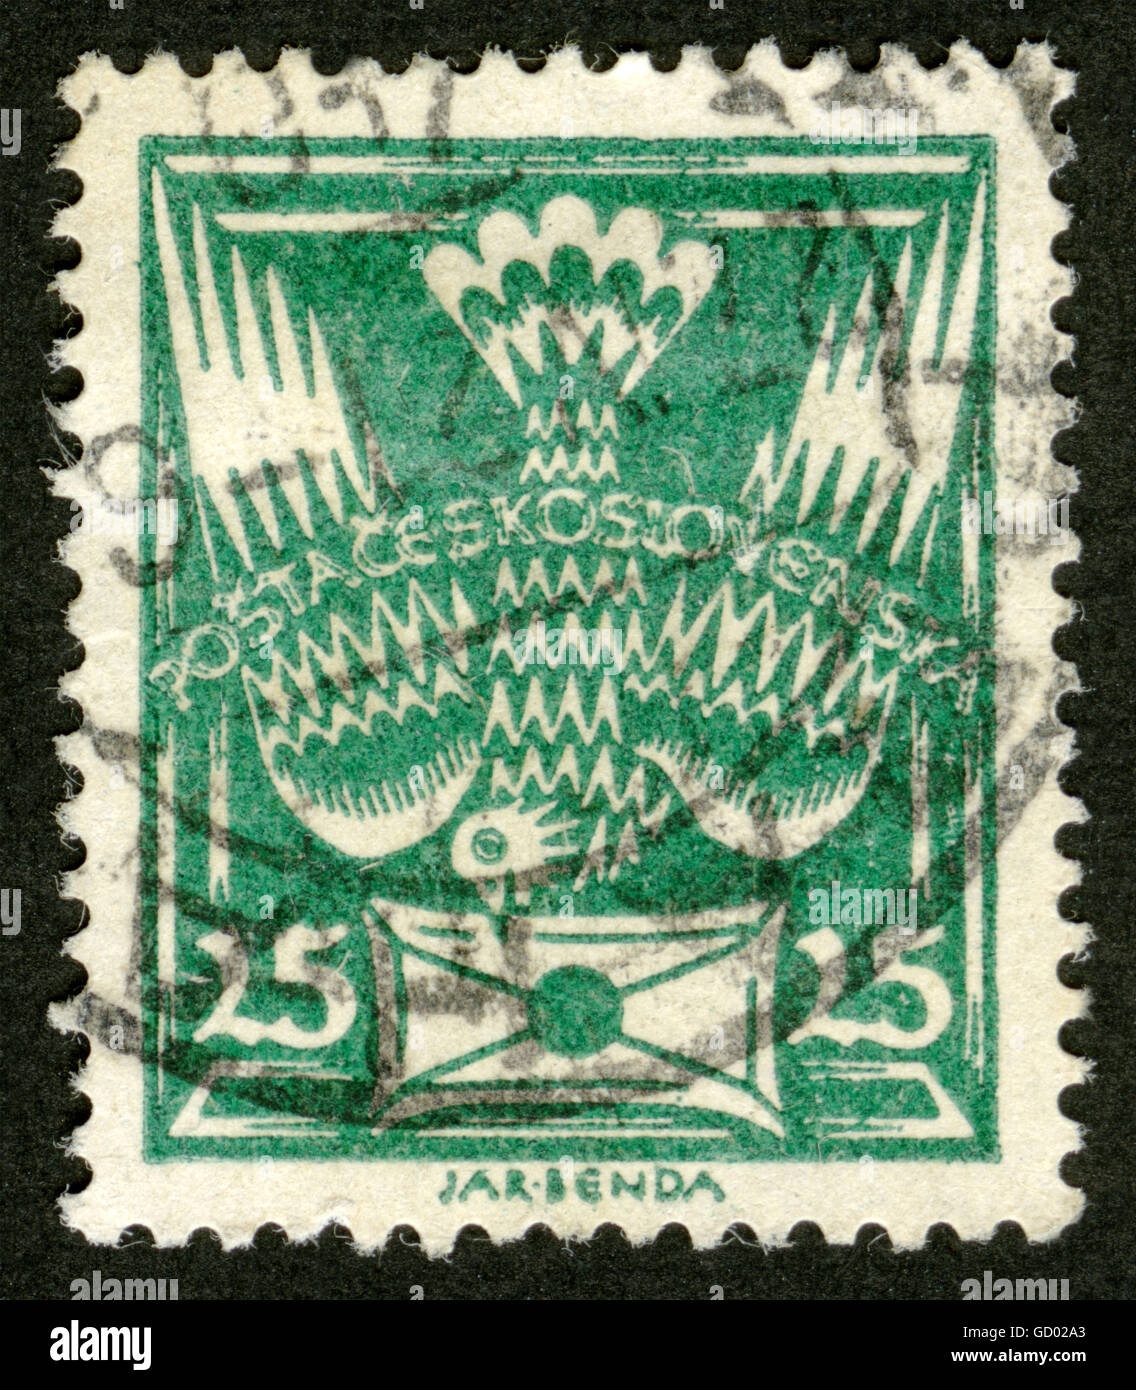 La Tchécoslovaquie, post mark,stamp, Banque D'Images